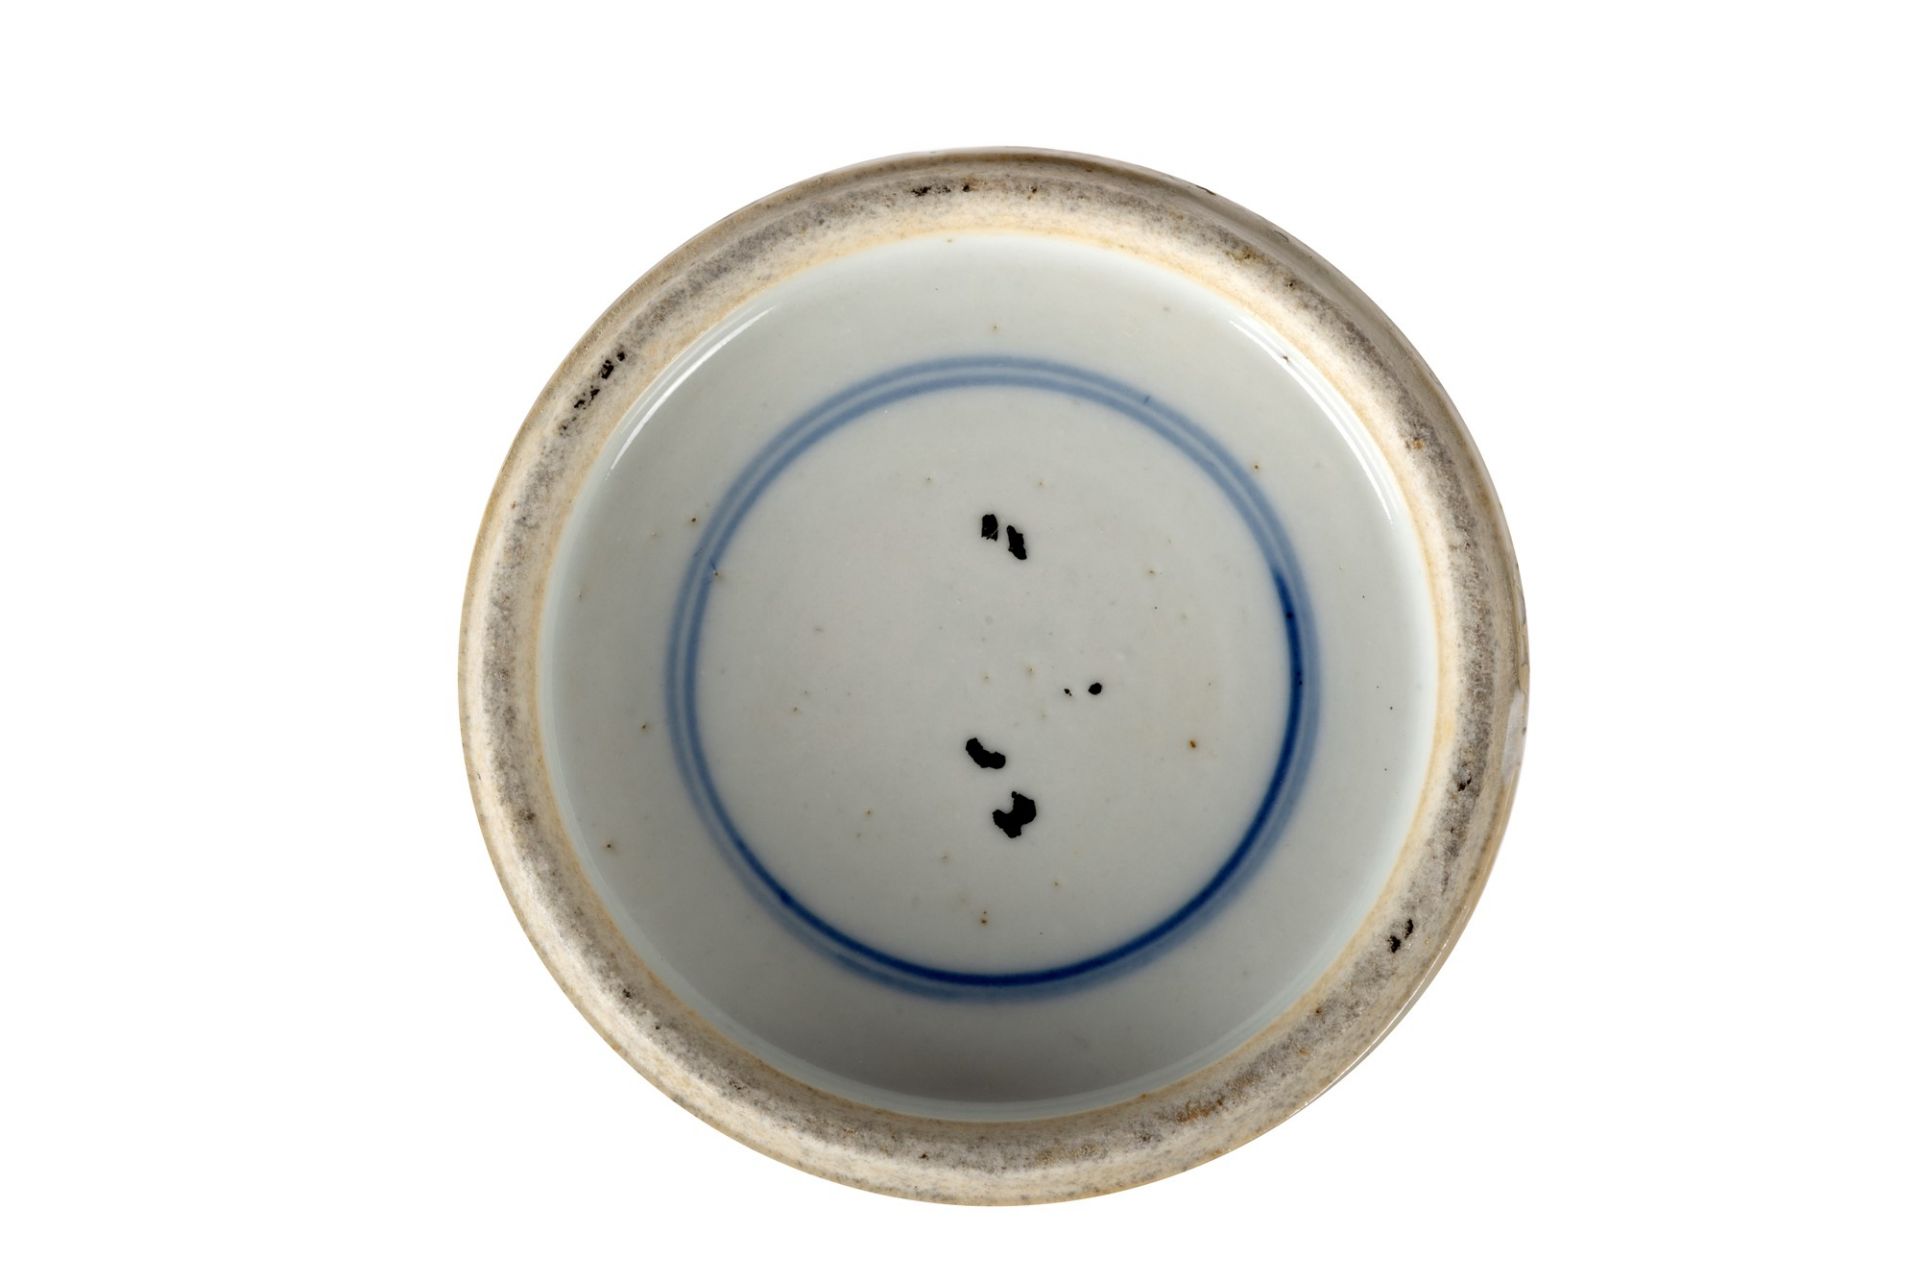 Polychrome porcelain vase, China, 20th century - Image 2 of 2